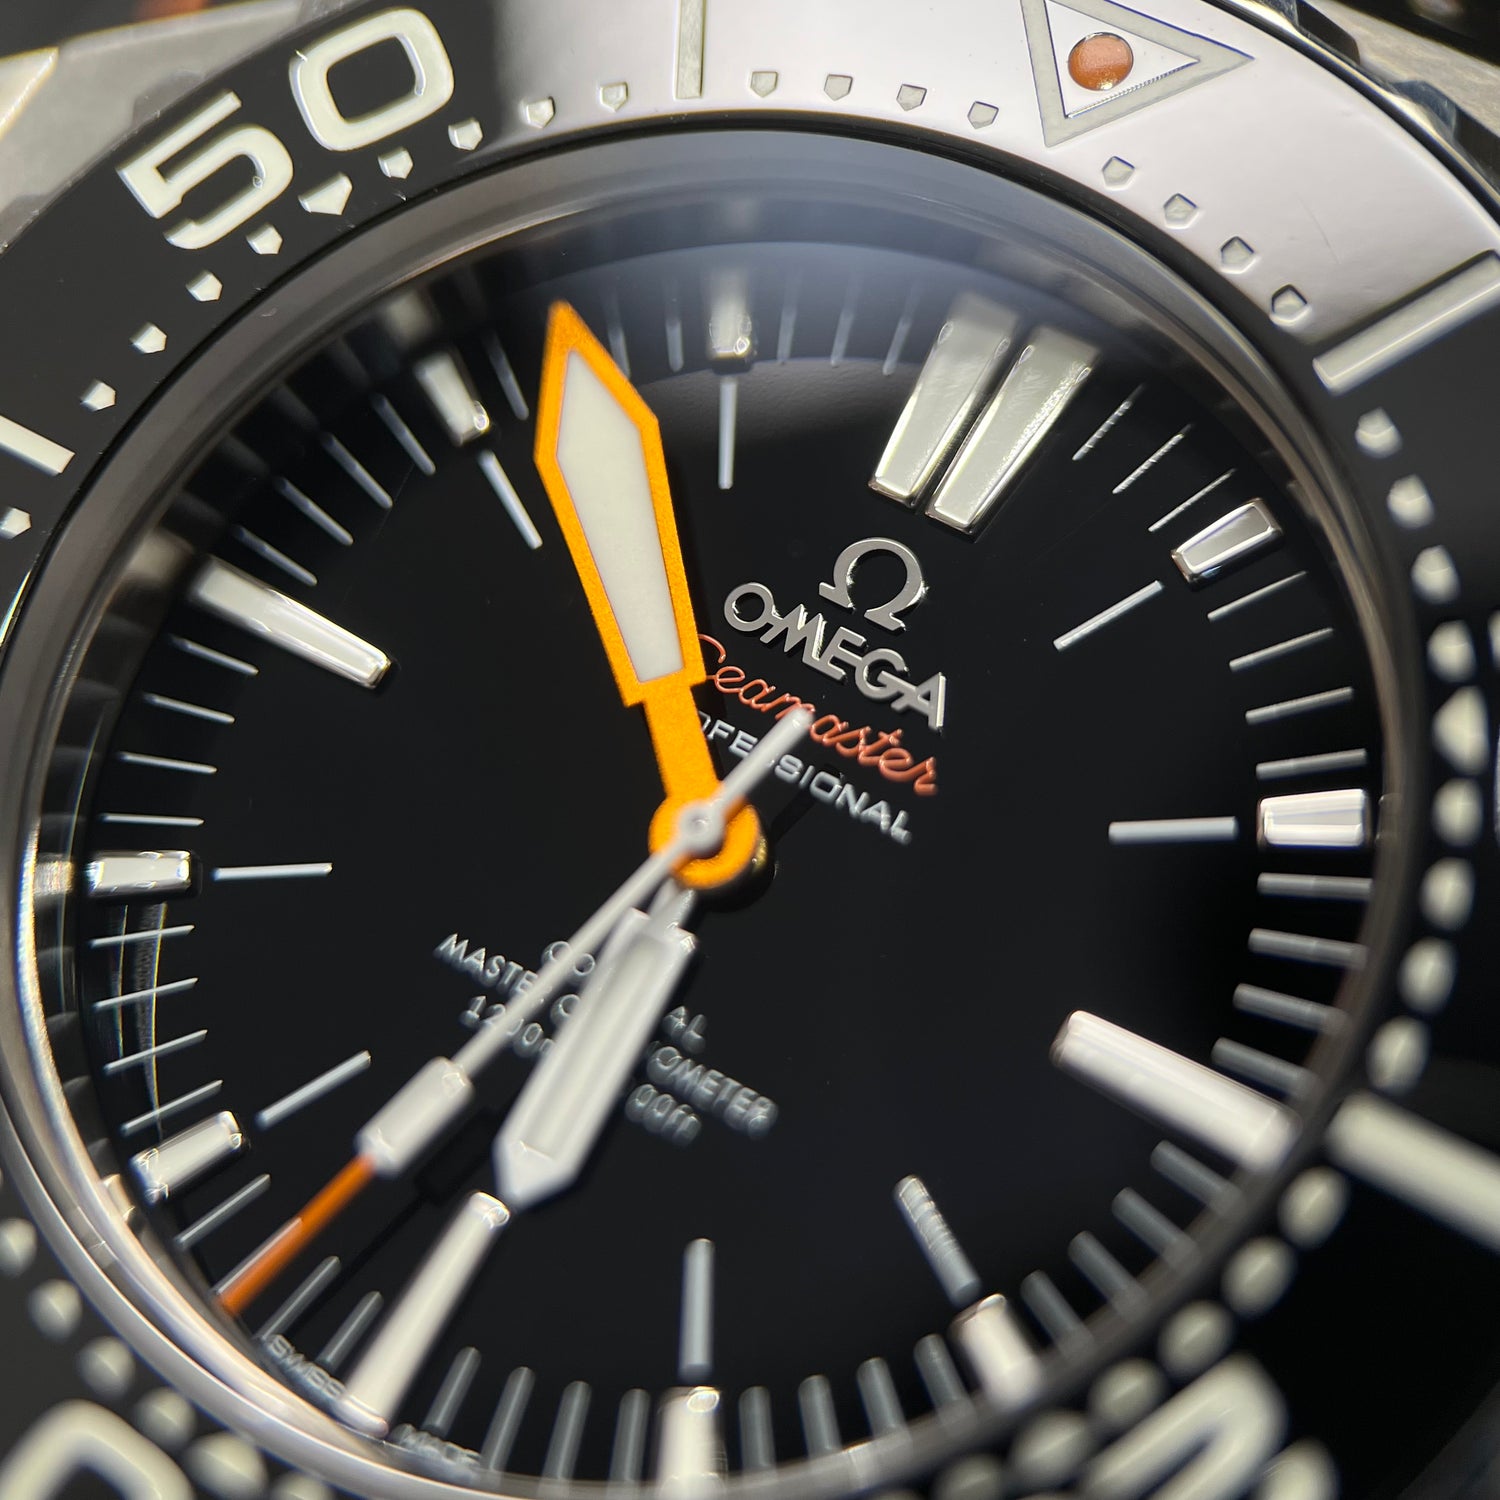 Omega 227.90.55.21.01.001 Seamaster Ploprof 1200M 2021 Full Set Watch